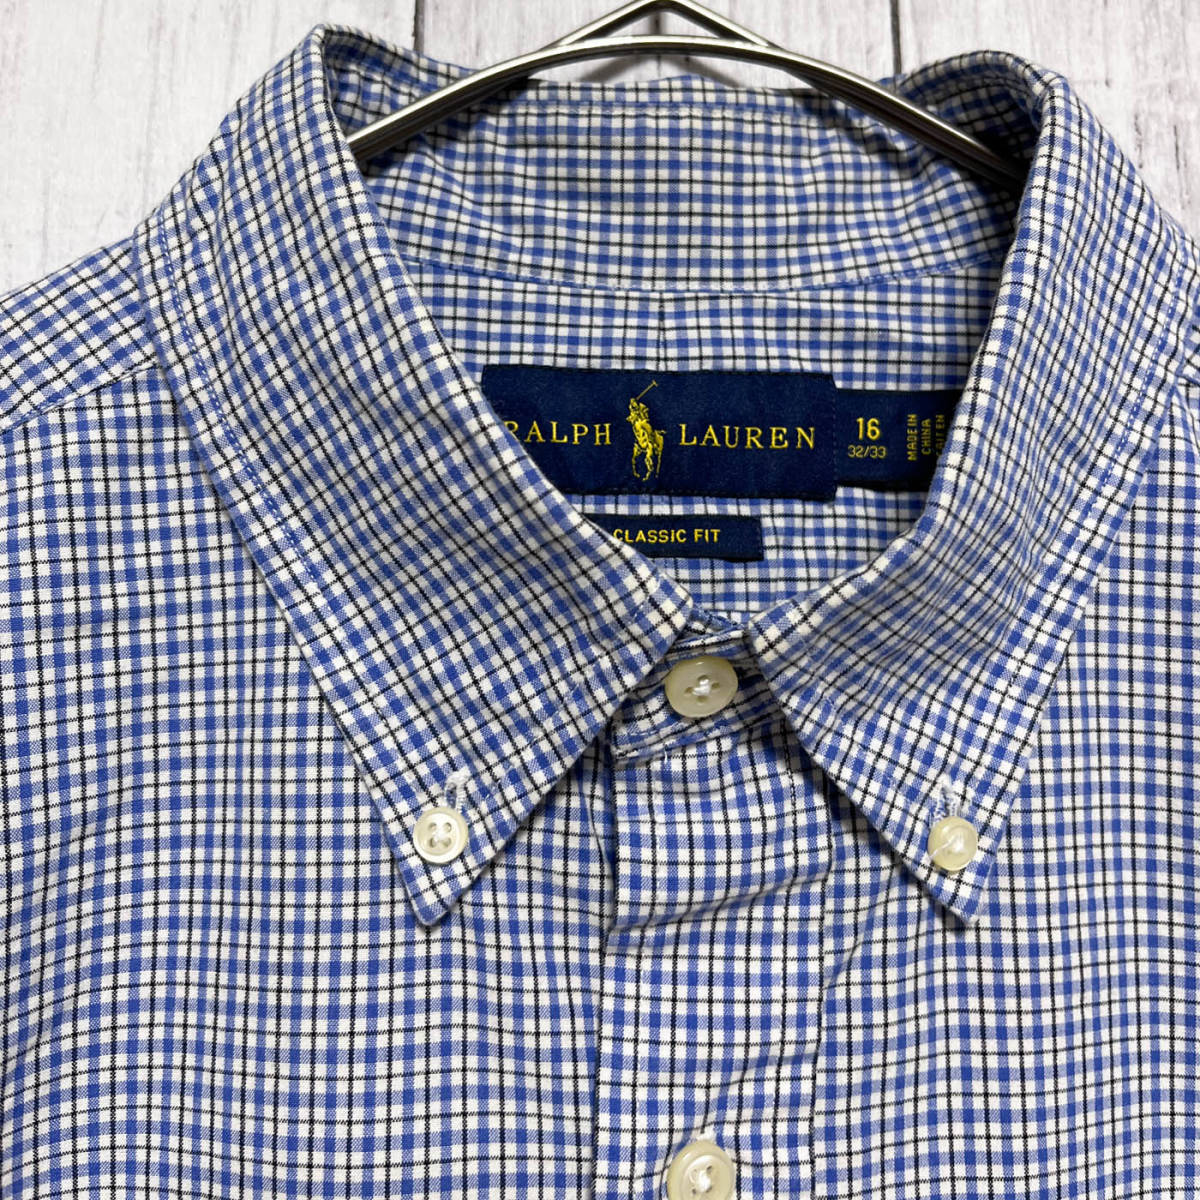 ラルフローレン Ralph Lauren CLASSIC FIT チェックシャツ 長袖シャツ メンズ ワンポイント コットン100% サイズ16 Lサイズ 5‐308_画像5